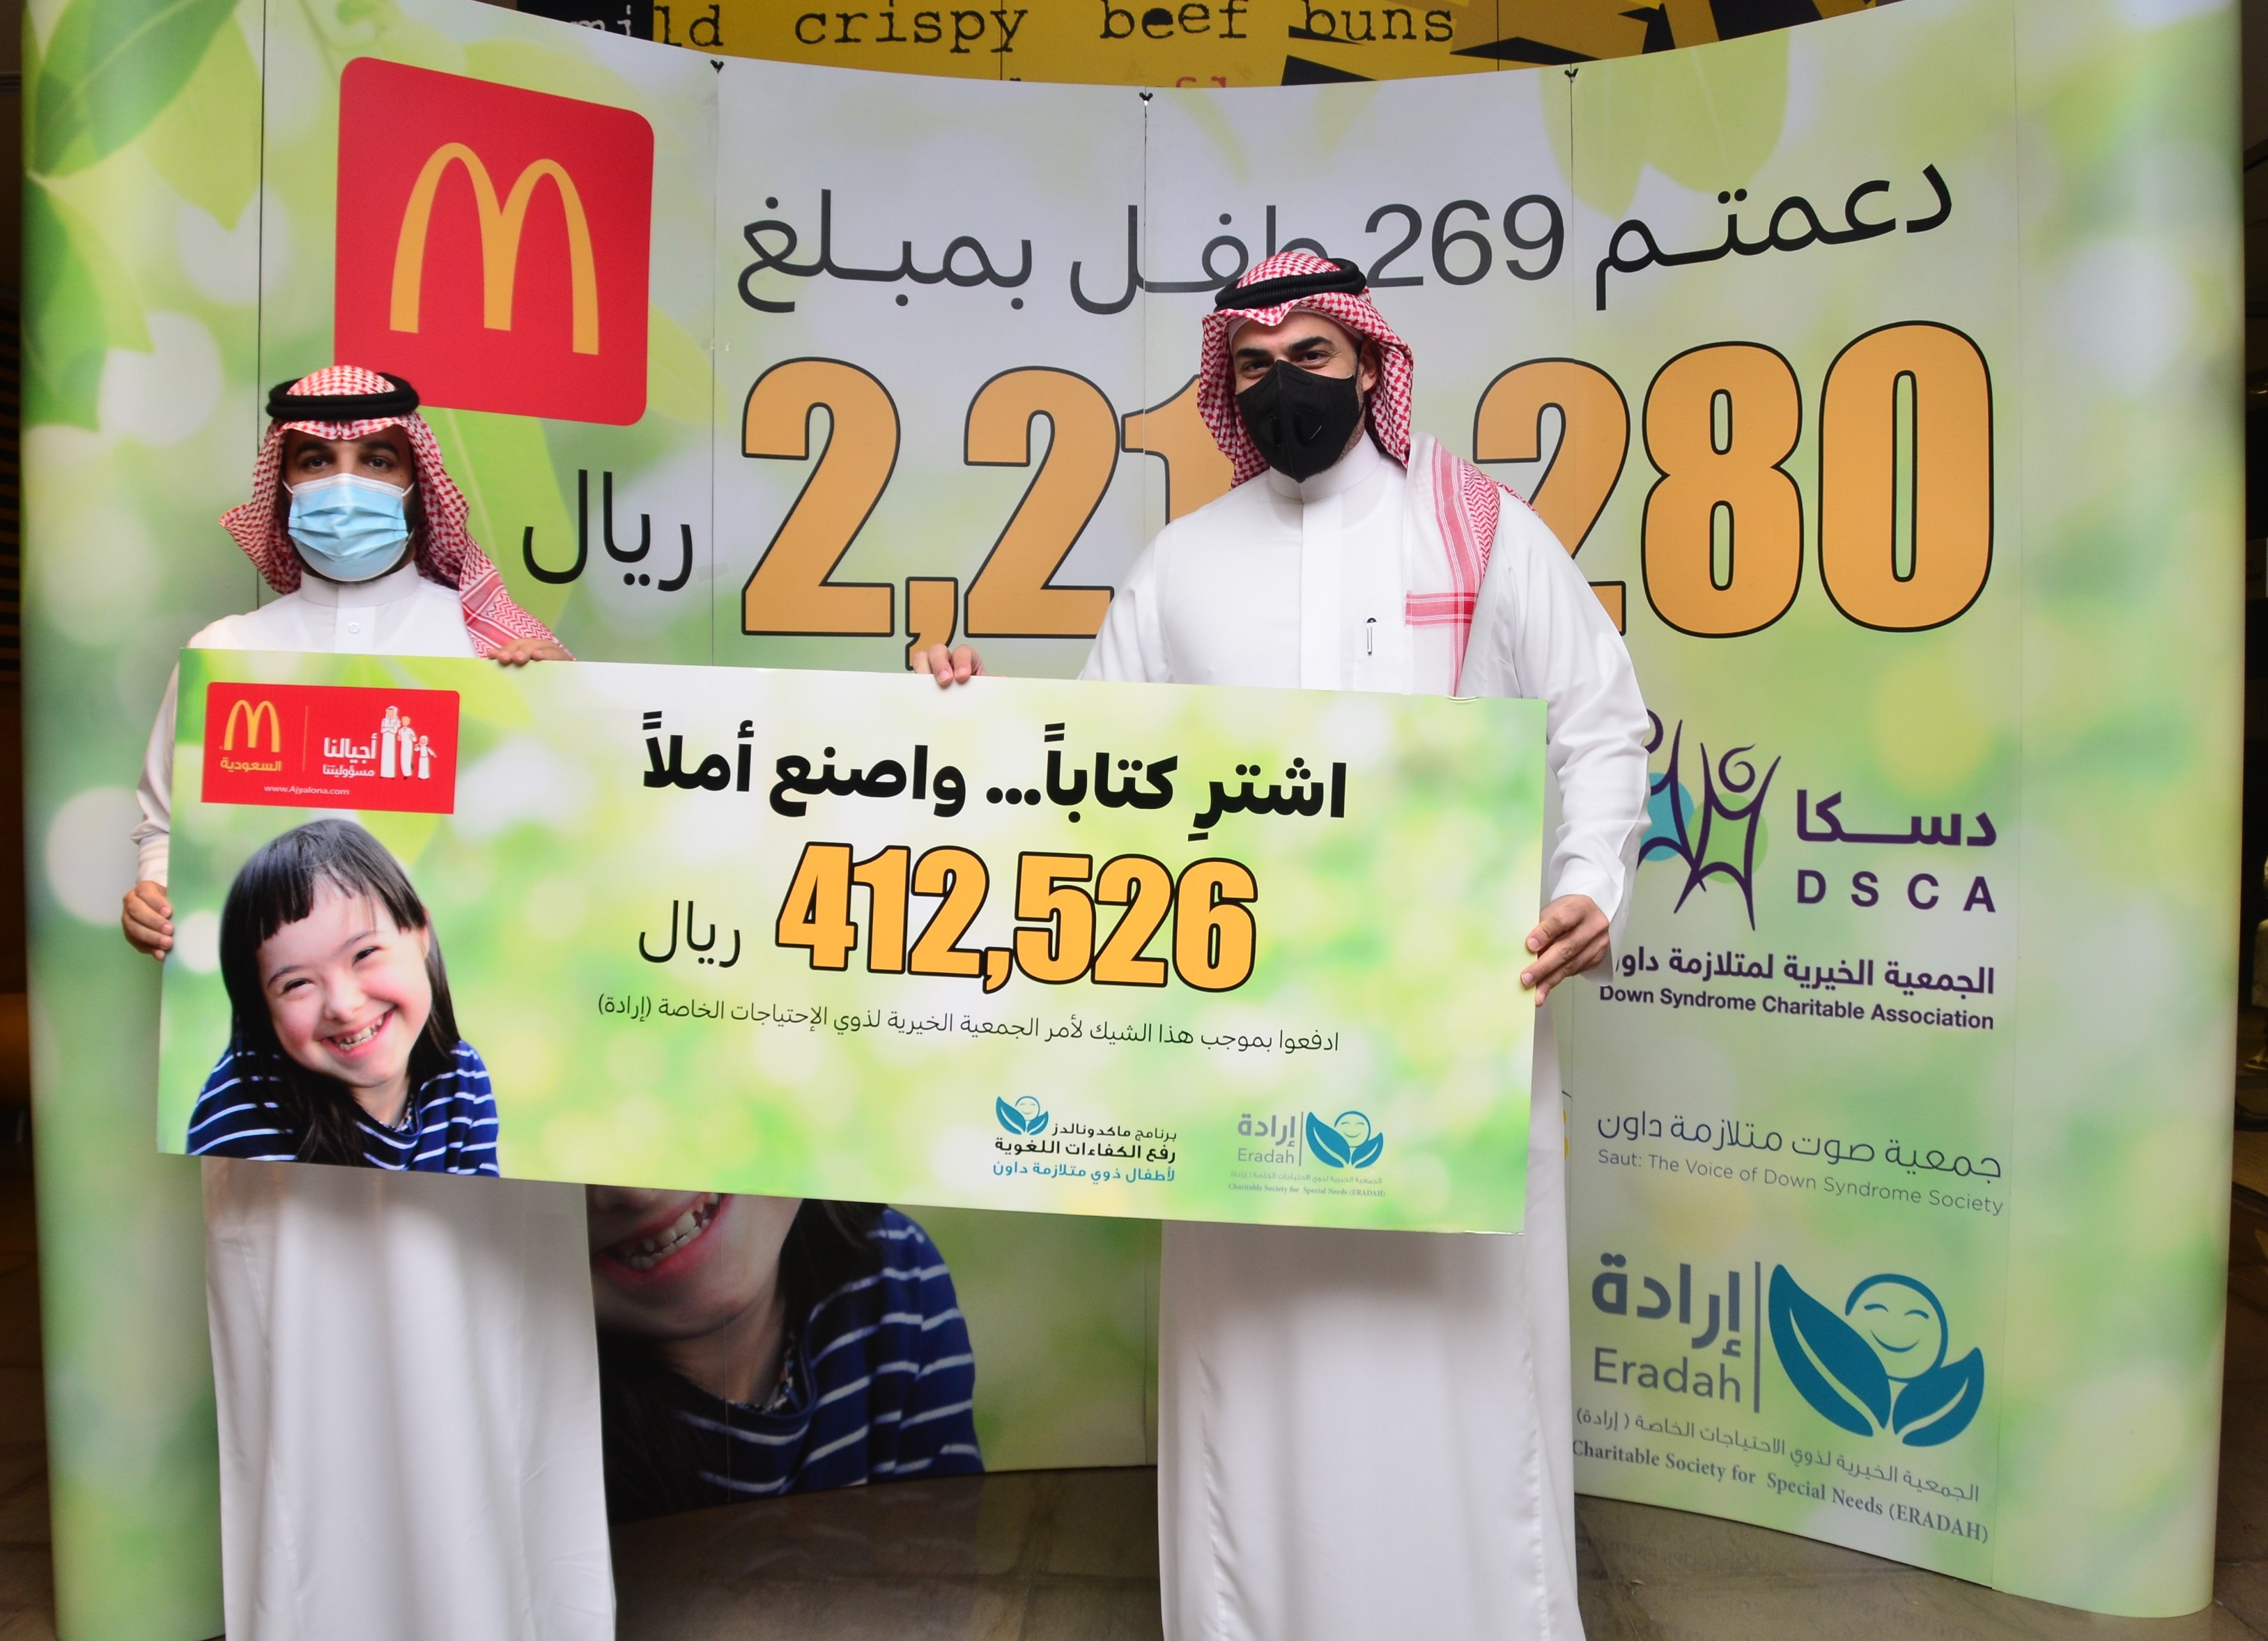 جمعية إرادة تتسلم دعم حملة ماكدونالدز الخيرية "اشتر كتاباً ... واصنع أملاً"